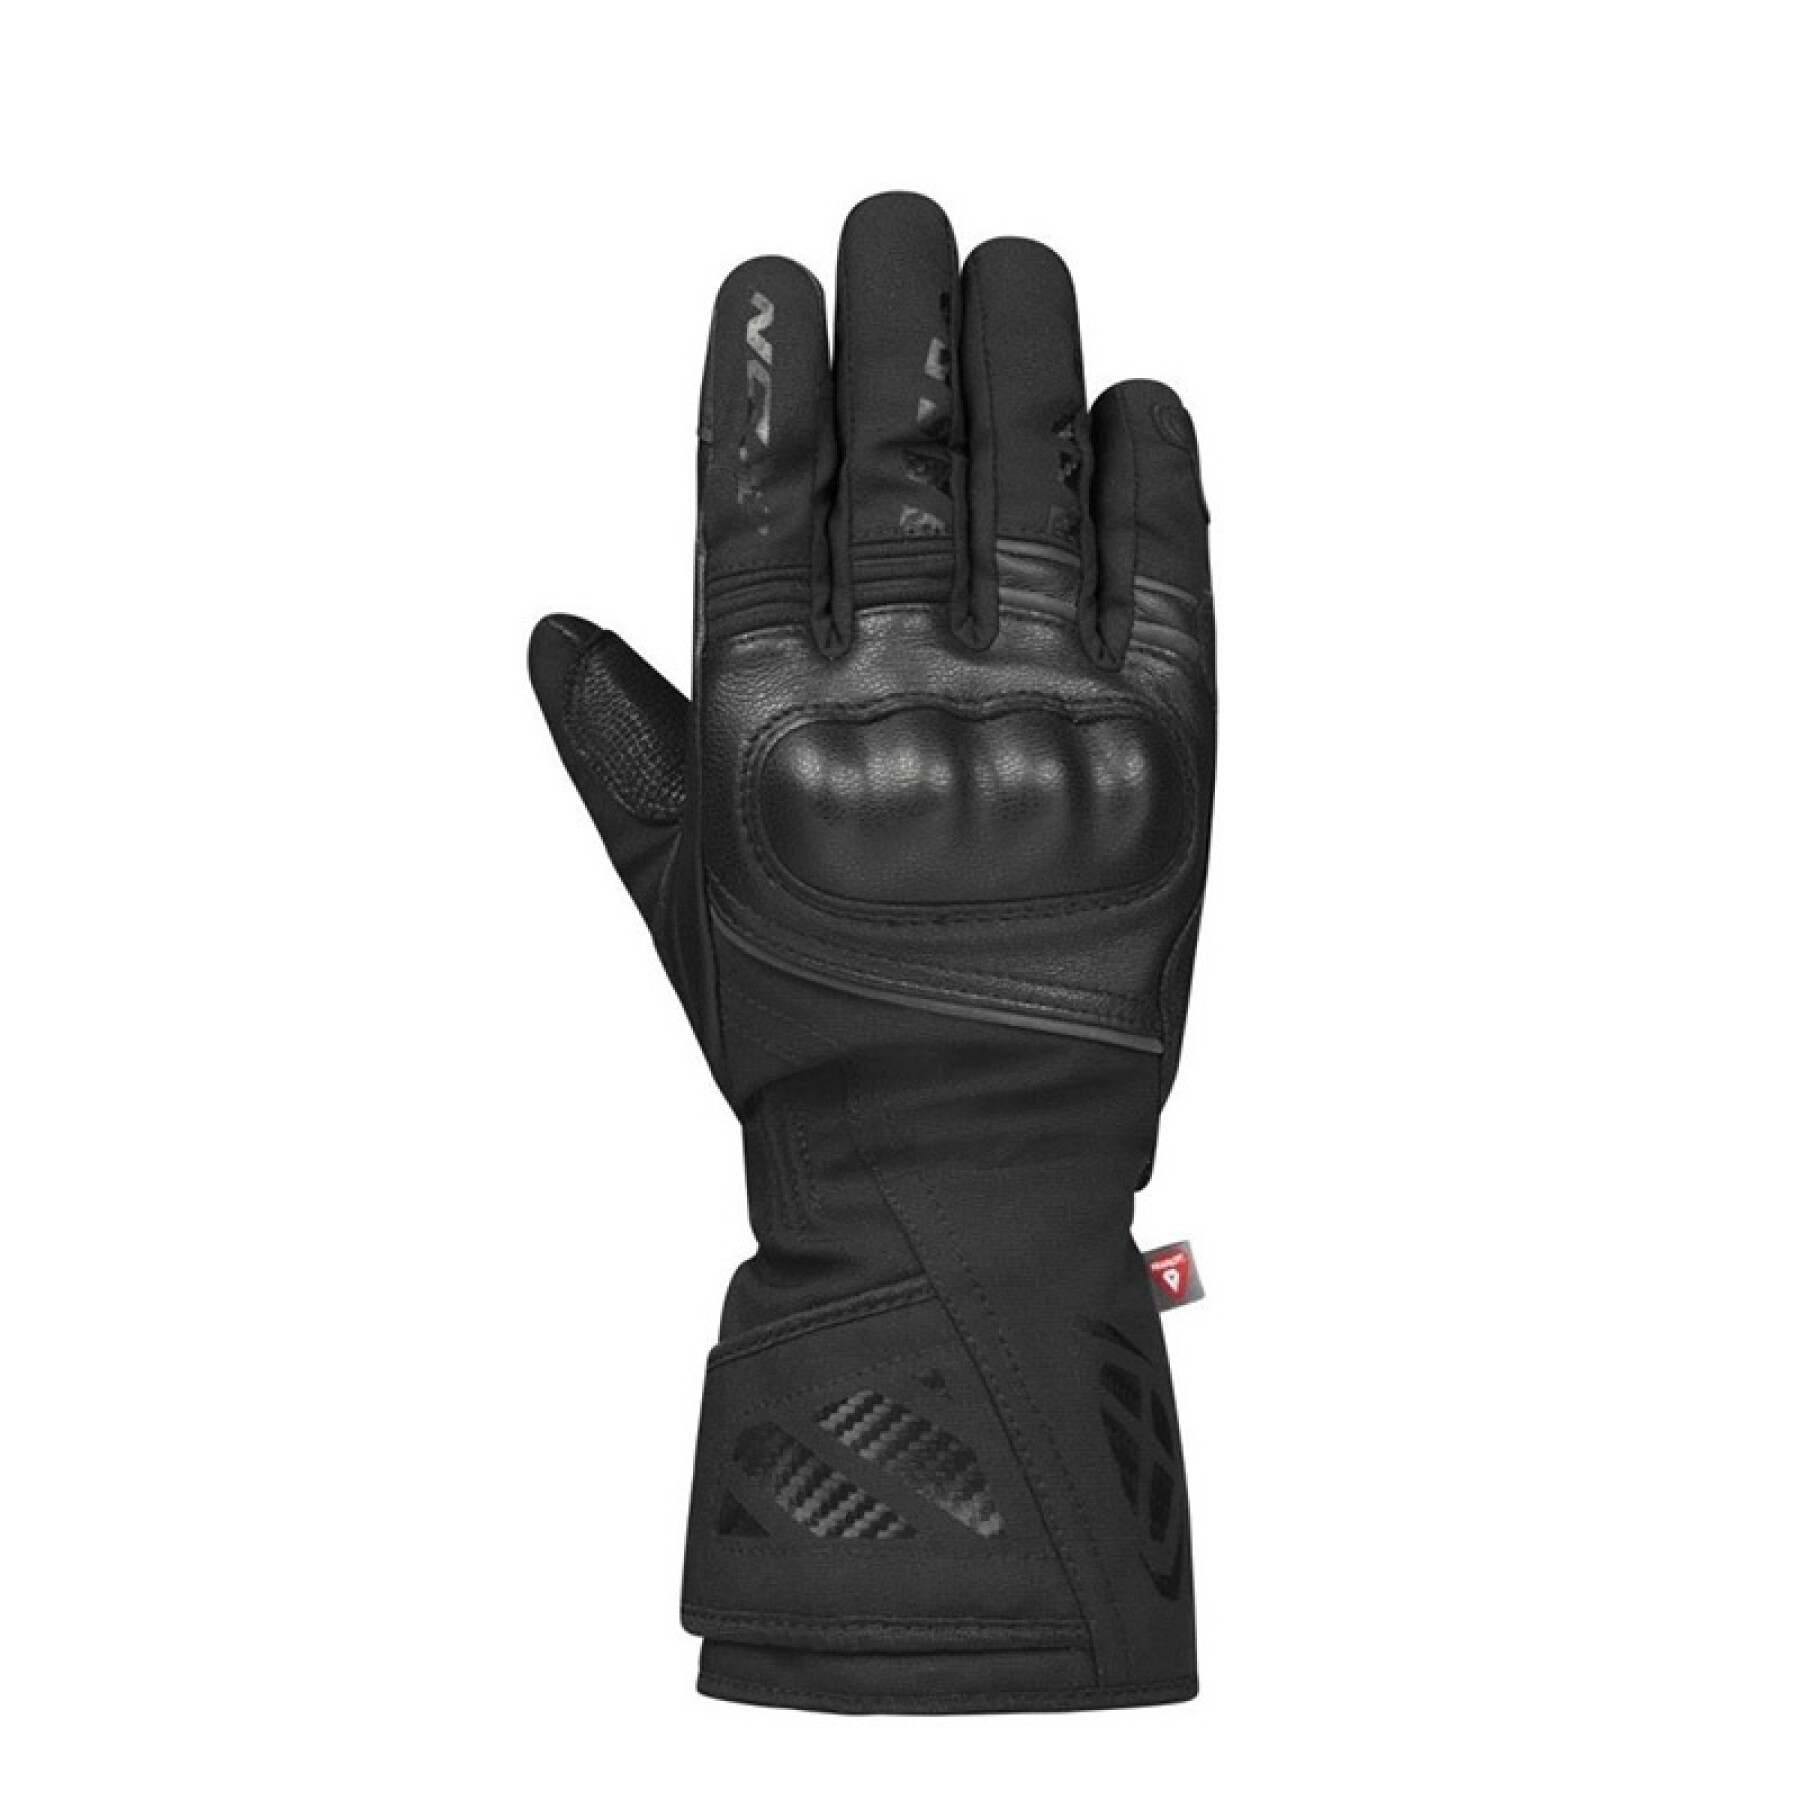 Women's winter motorcycle gloves Ixon Pro Rescue 3